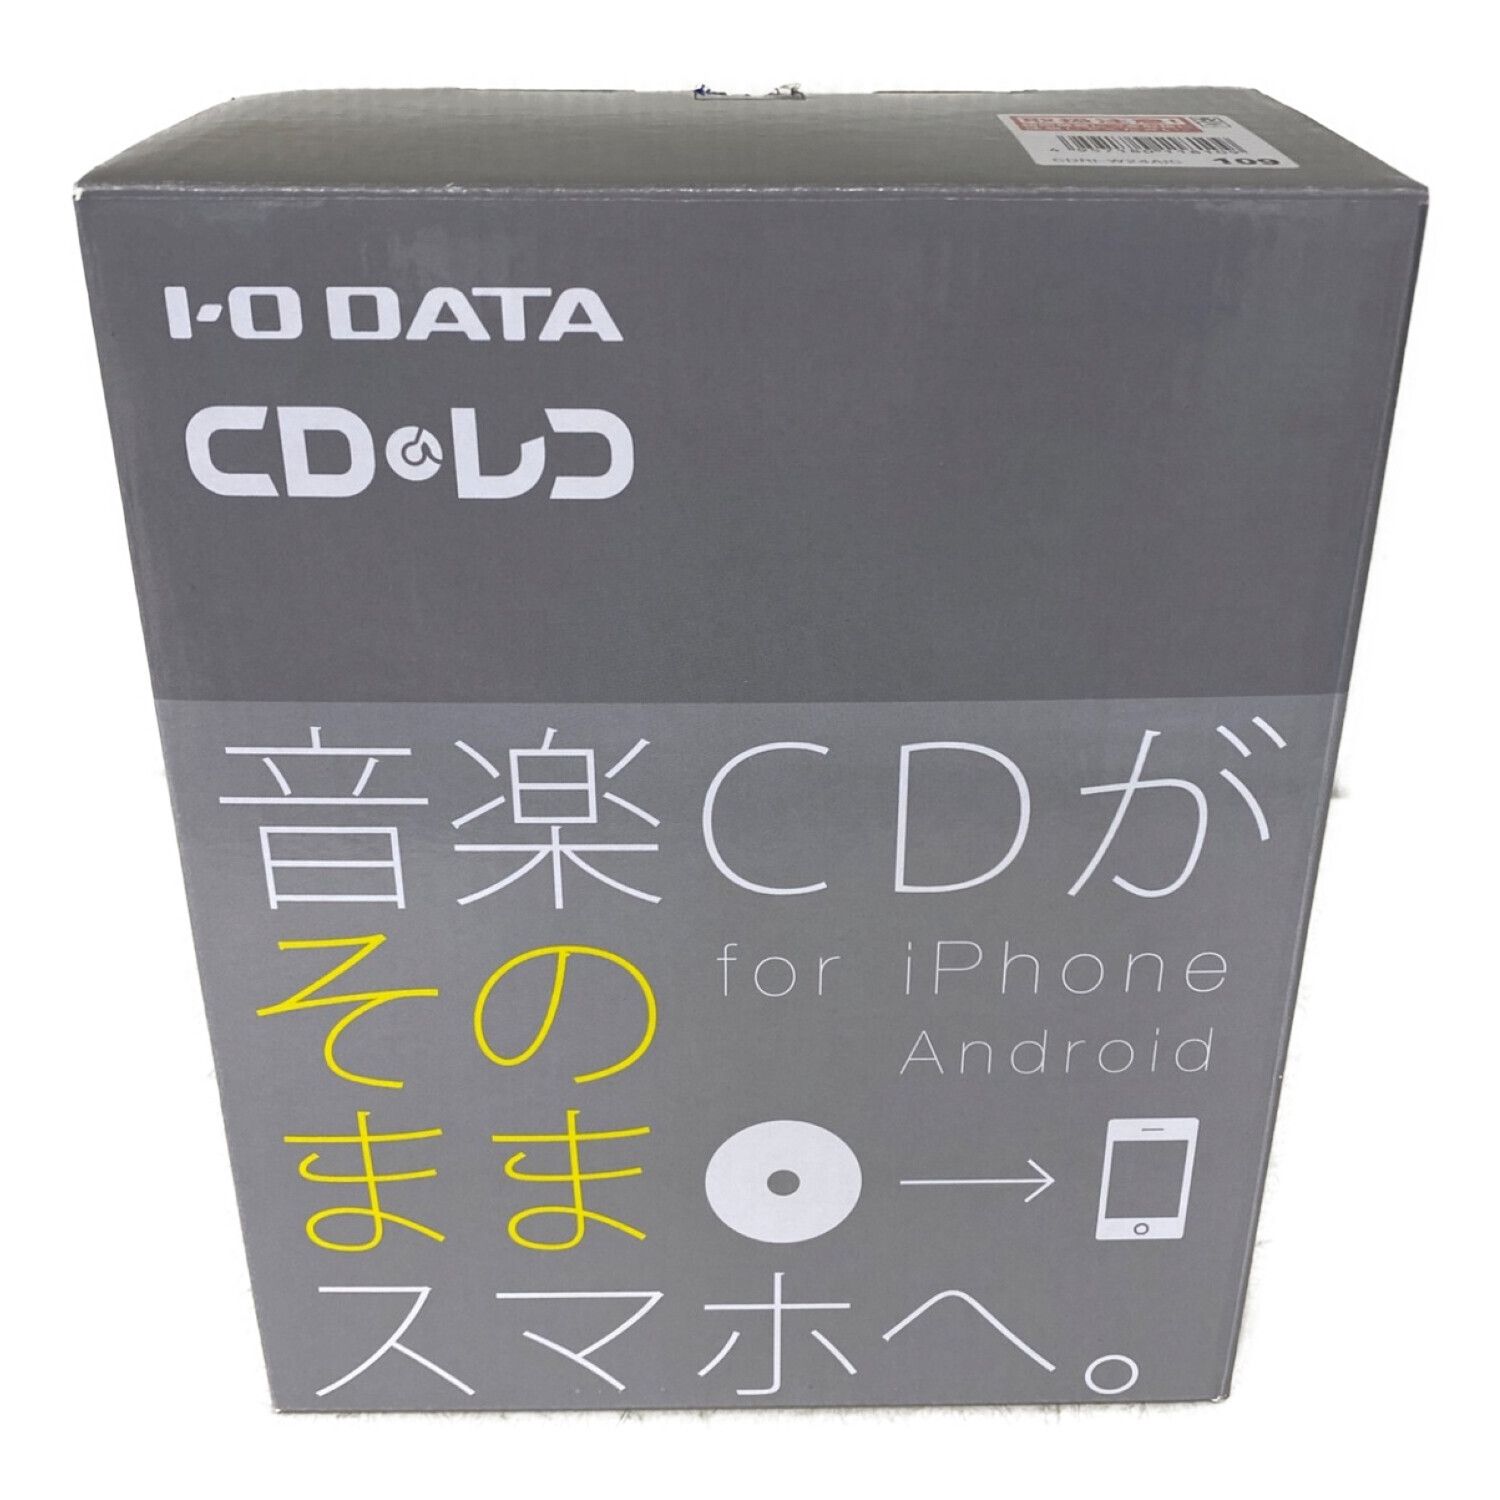 IODATAI-O DATA　CDレコ Wi-Fi　CDRI-W24AIC